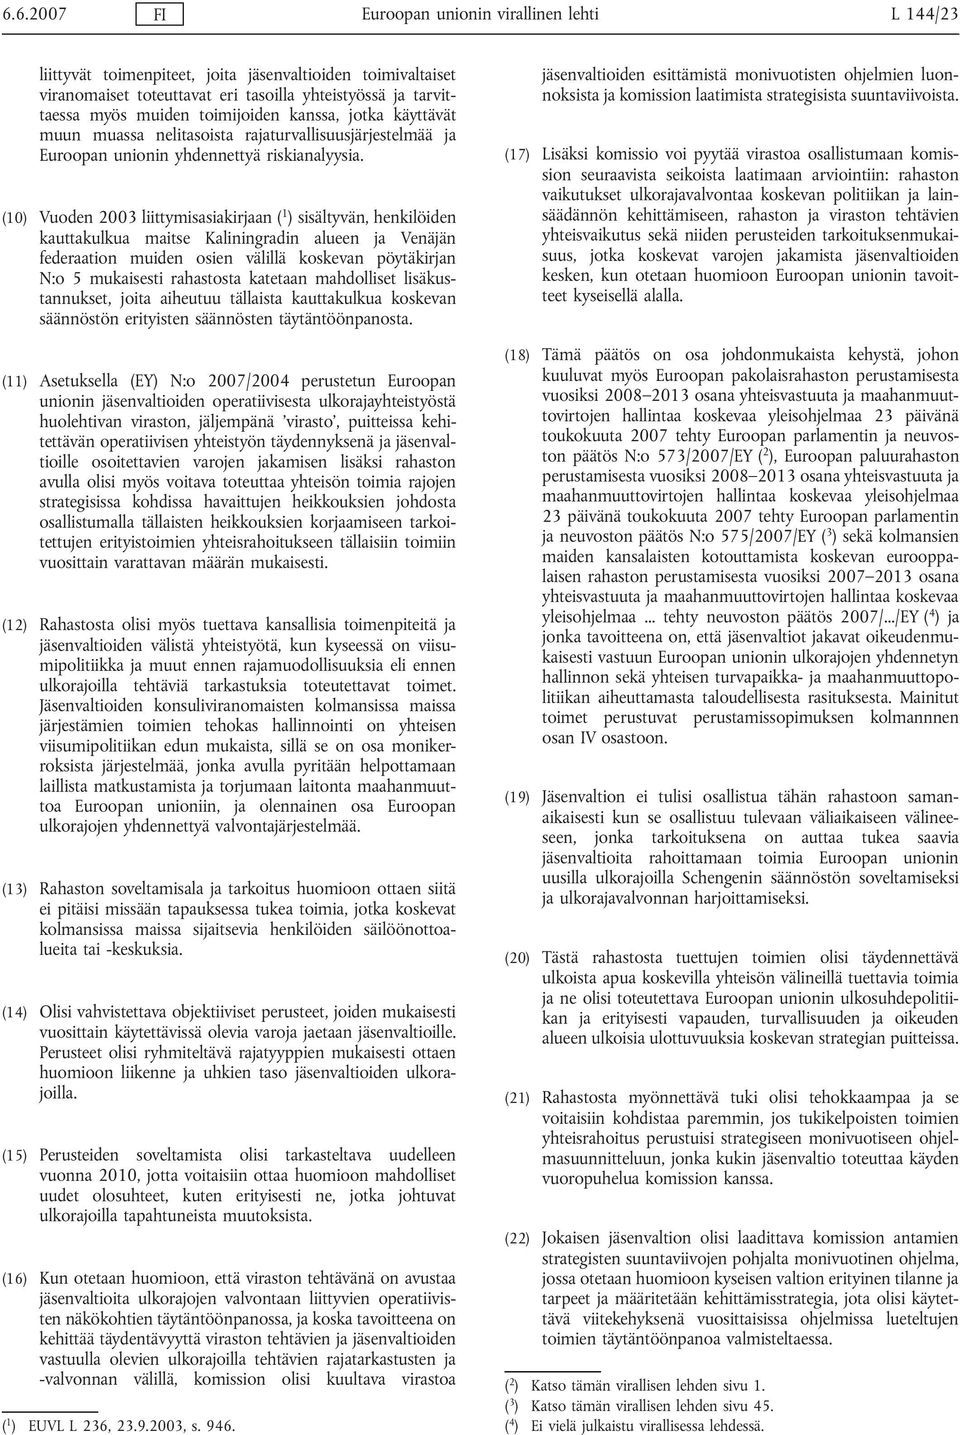 (10) Vuoden 2003 liittymisasiakirjaan ( 1 ) sisältyvän, henkilöiden kauttakulkua maitse Kaliningradin alueen ja Venäjän federaation muiden osien välillä koskevan pöytäkirjan N:o 5 mukaisesti